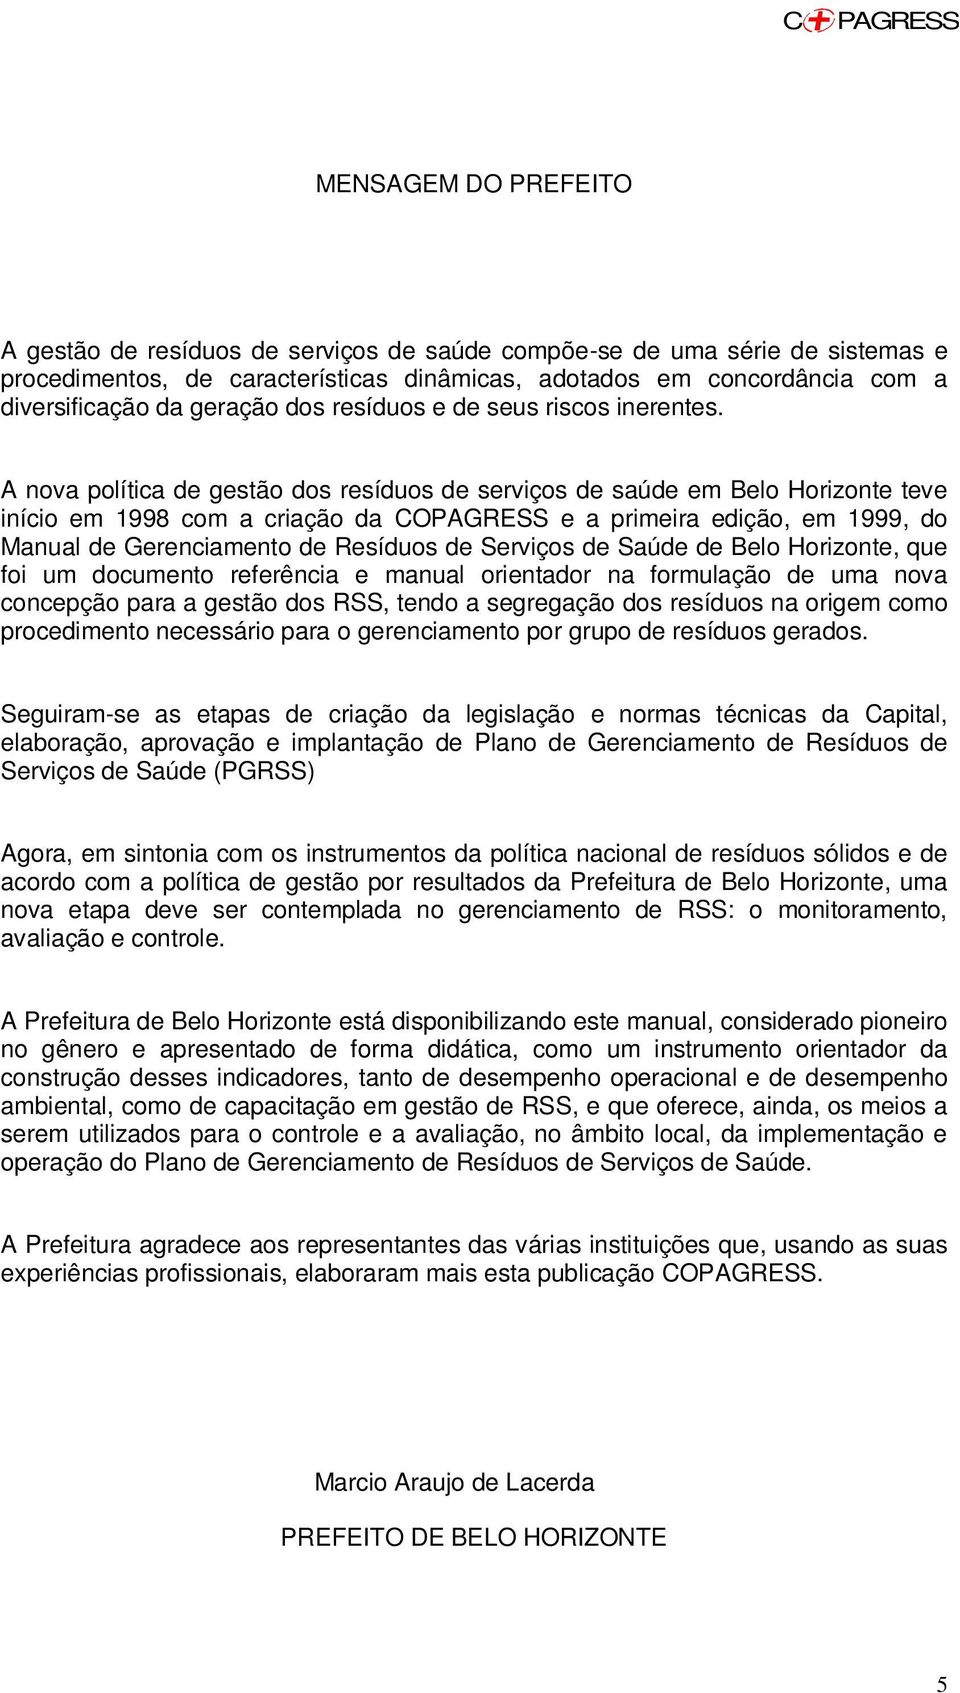 A nova política de gestão dos resíduos de serviços de saúde em Belo Horizonte teve início em 1998 com a criação da CO e a primeira edição, em 1999, do Manual de Gerenciamento de Resíduos de Serviços